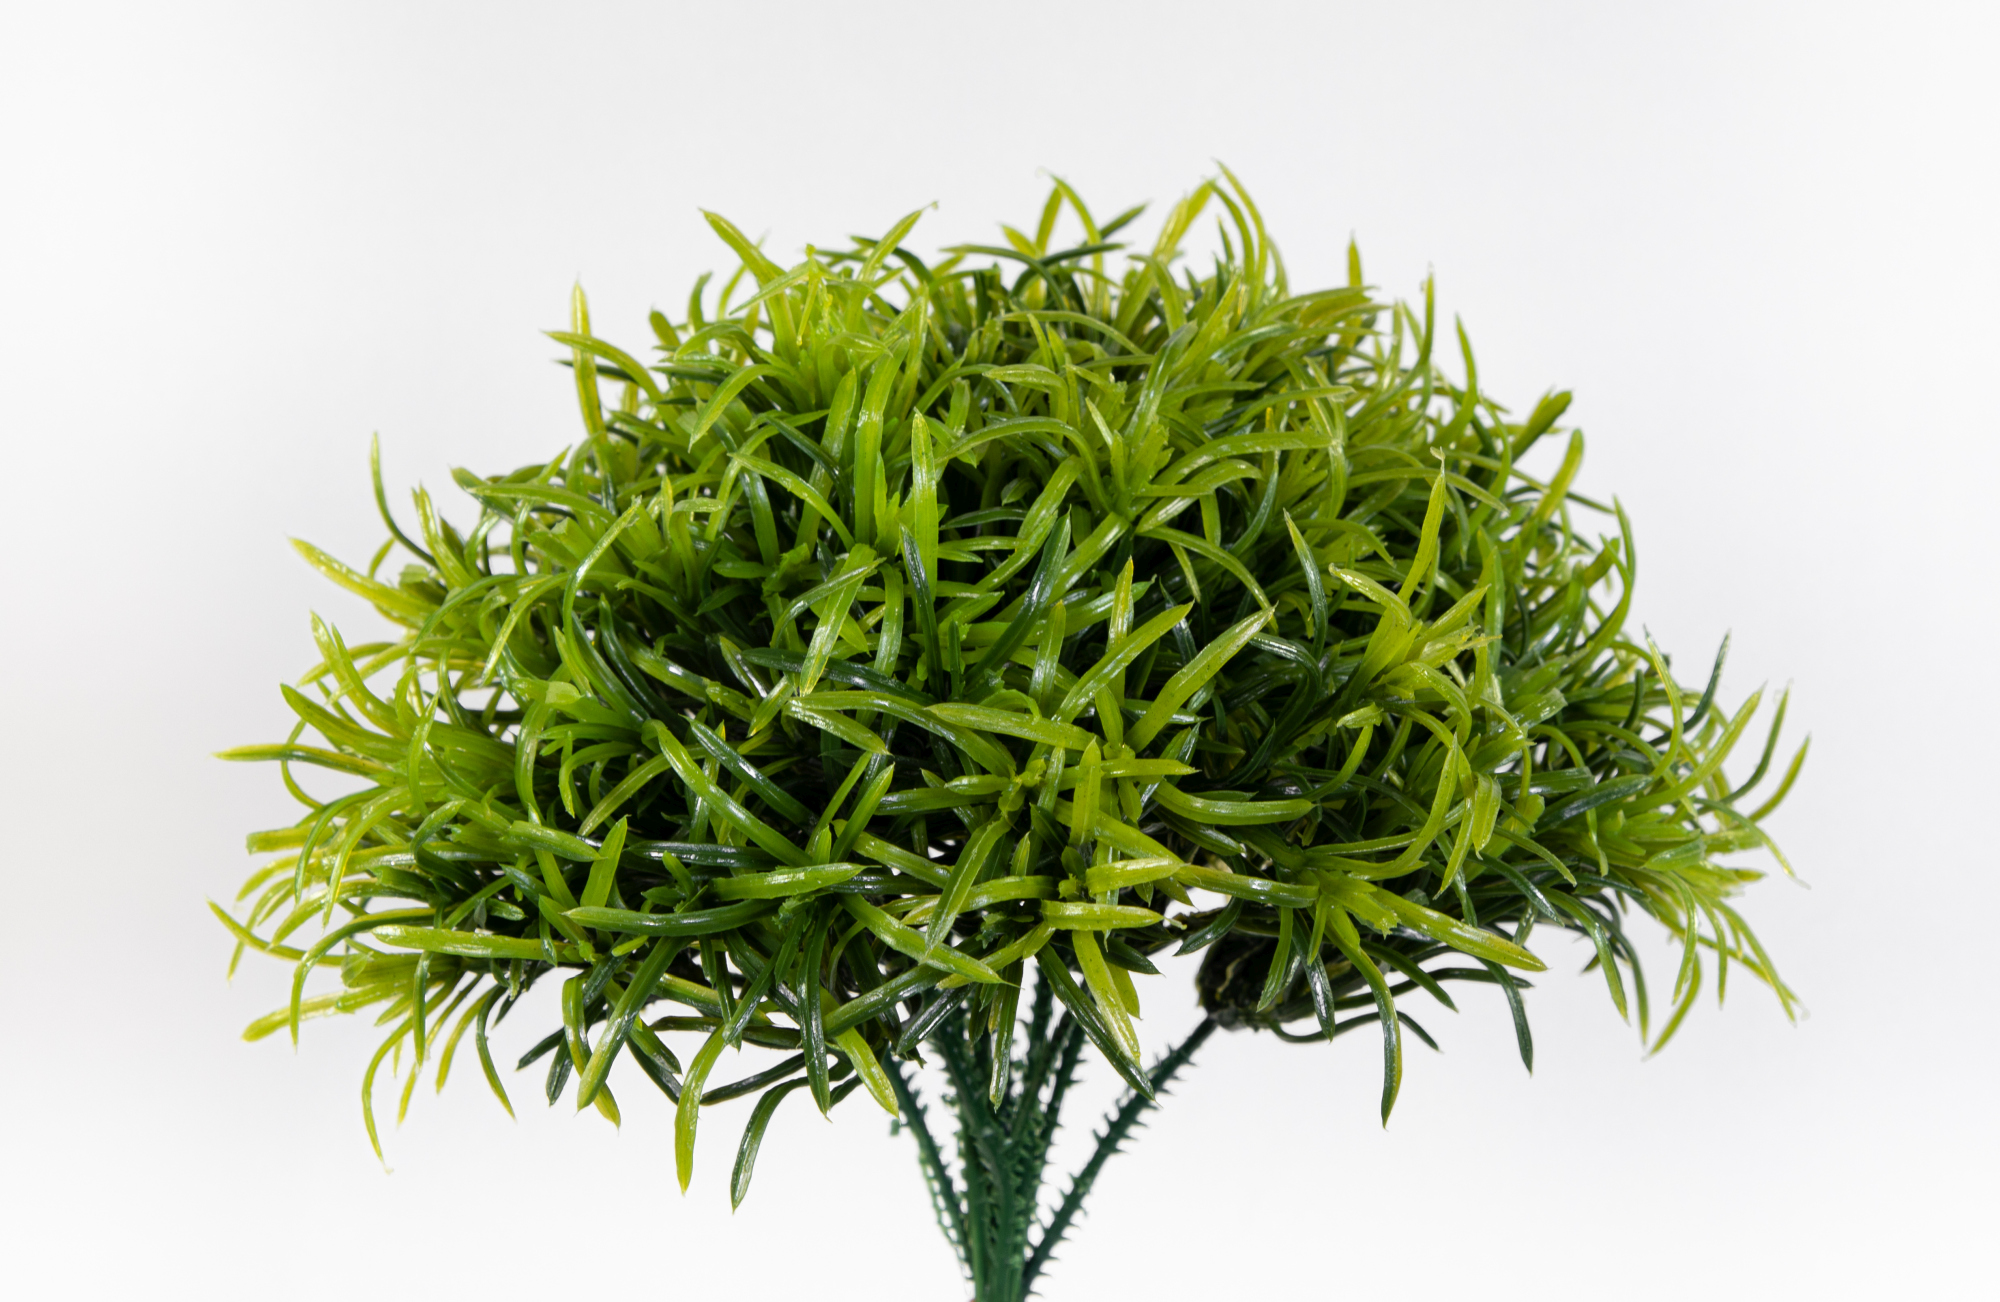 12 Stück Graspick 20cm grün JA Kunstpflanzen künstlicher Zweig Gras-Pick Graszweig